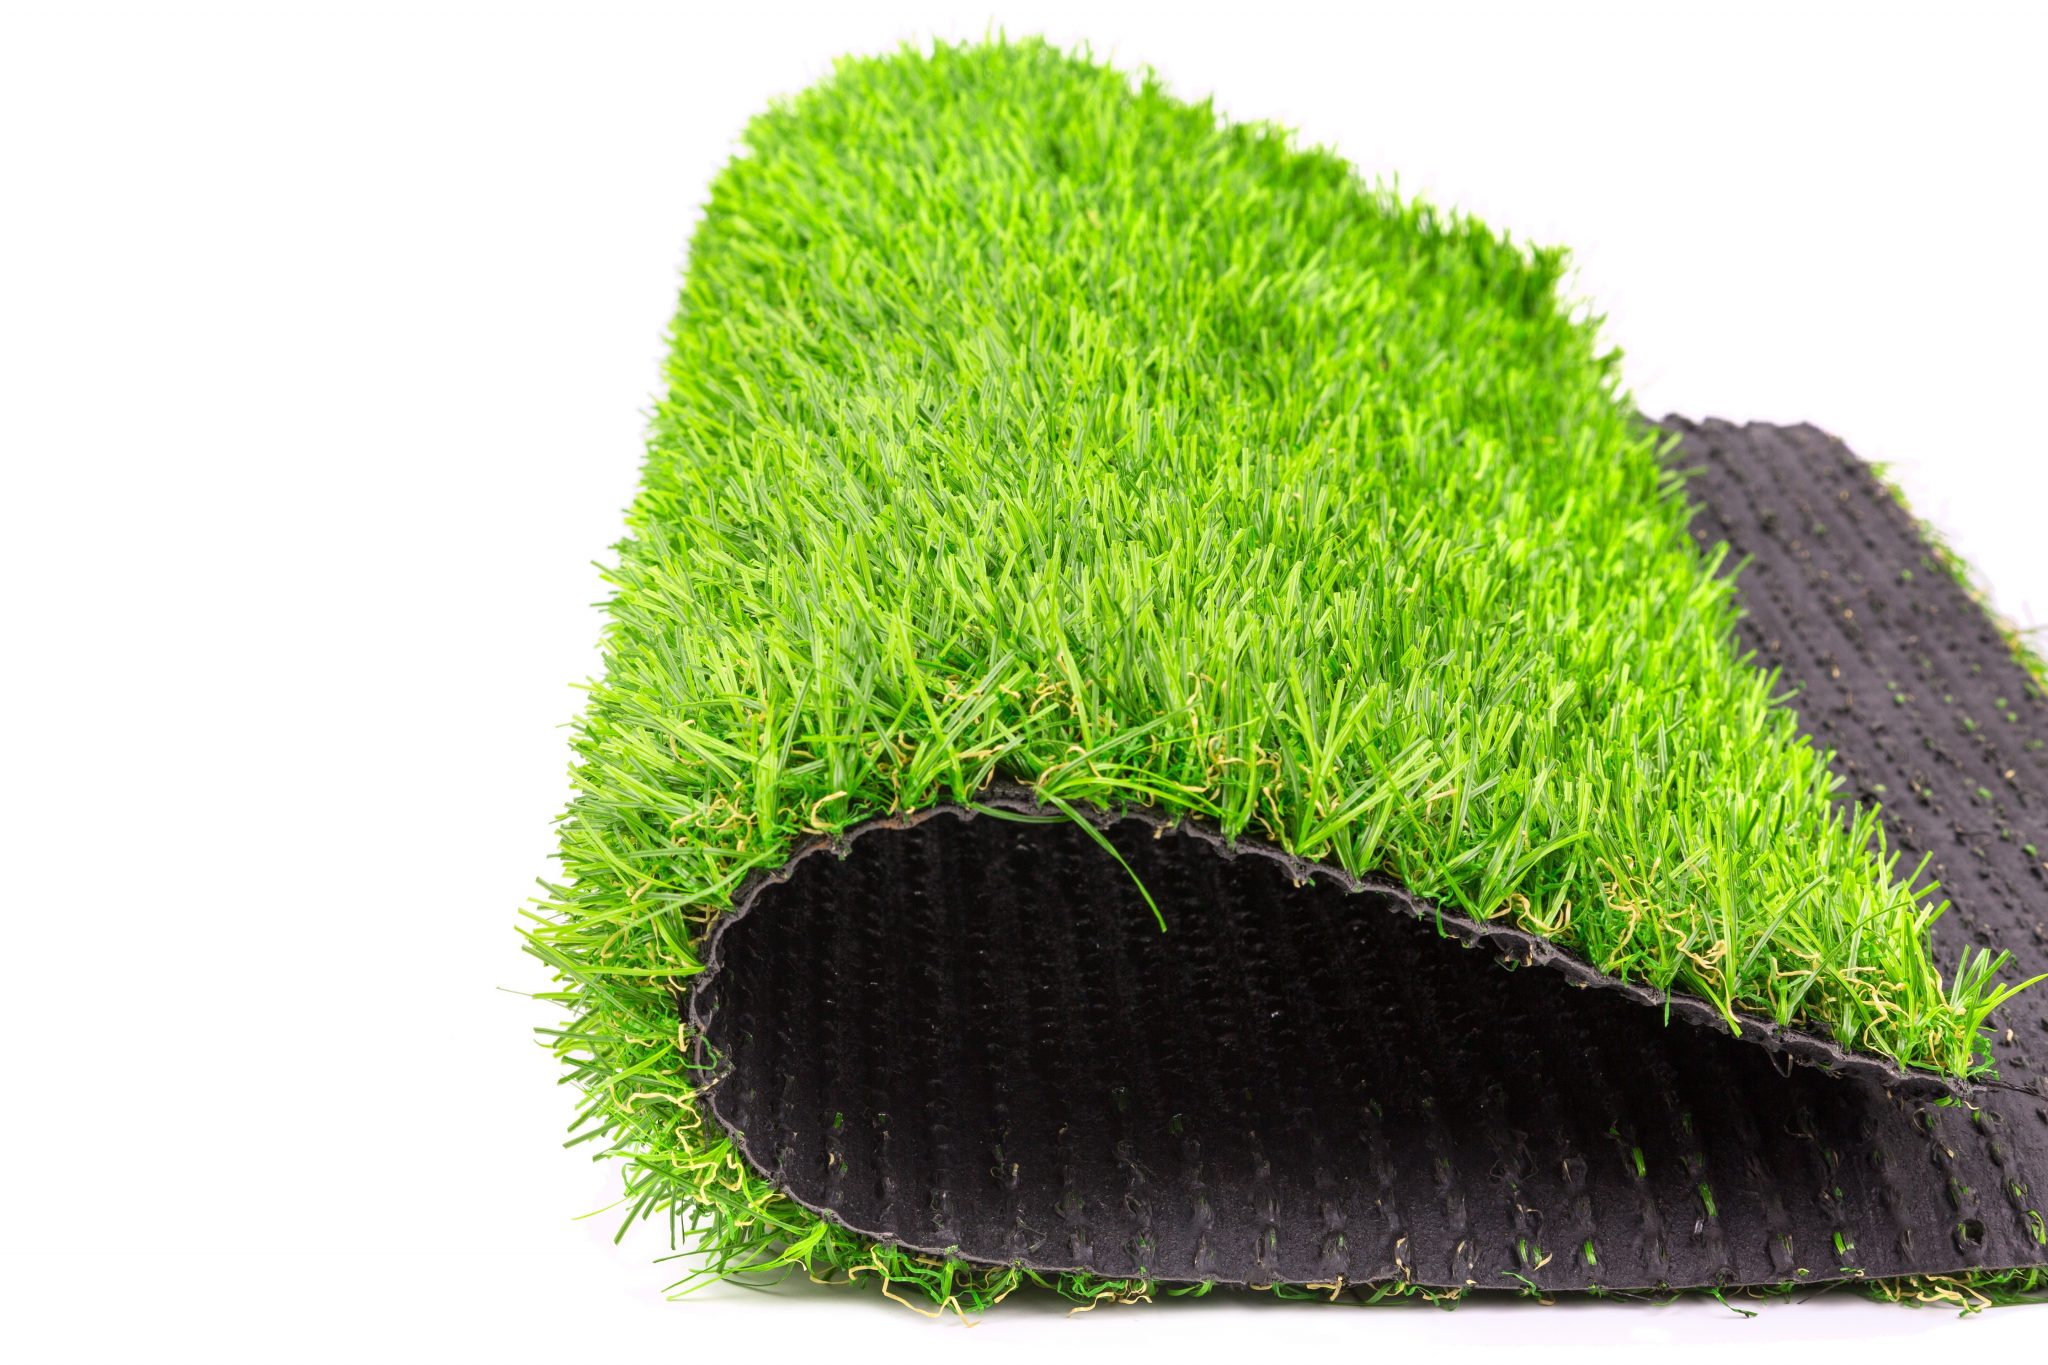 العشب الصناعي – الاستخدام وأهم الميزات والعيوب